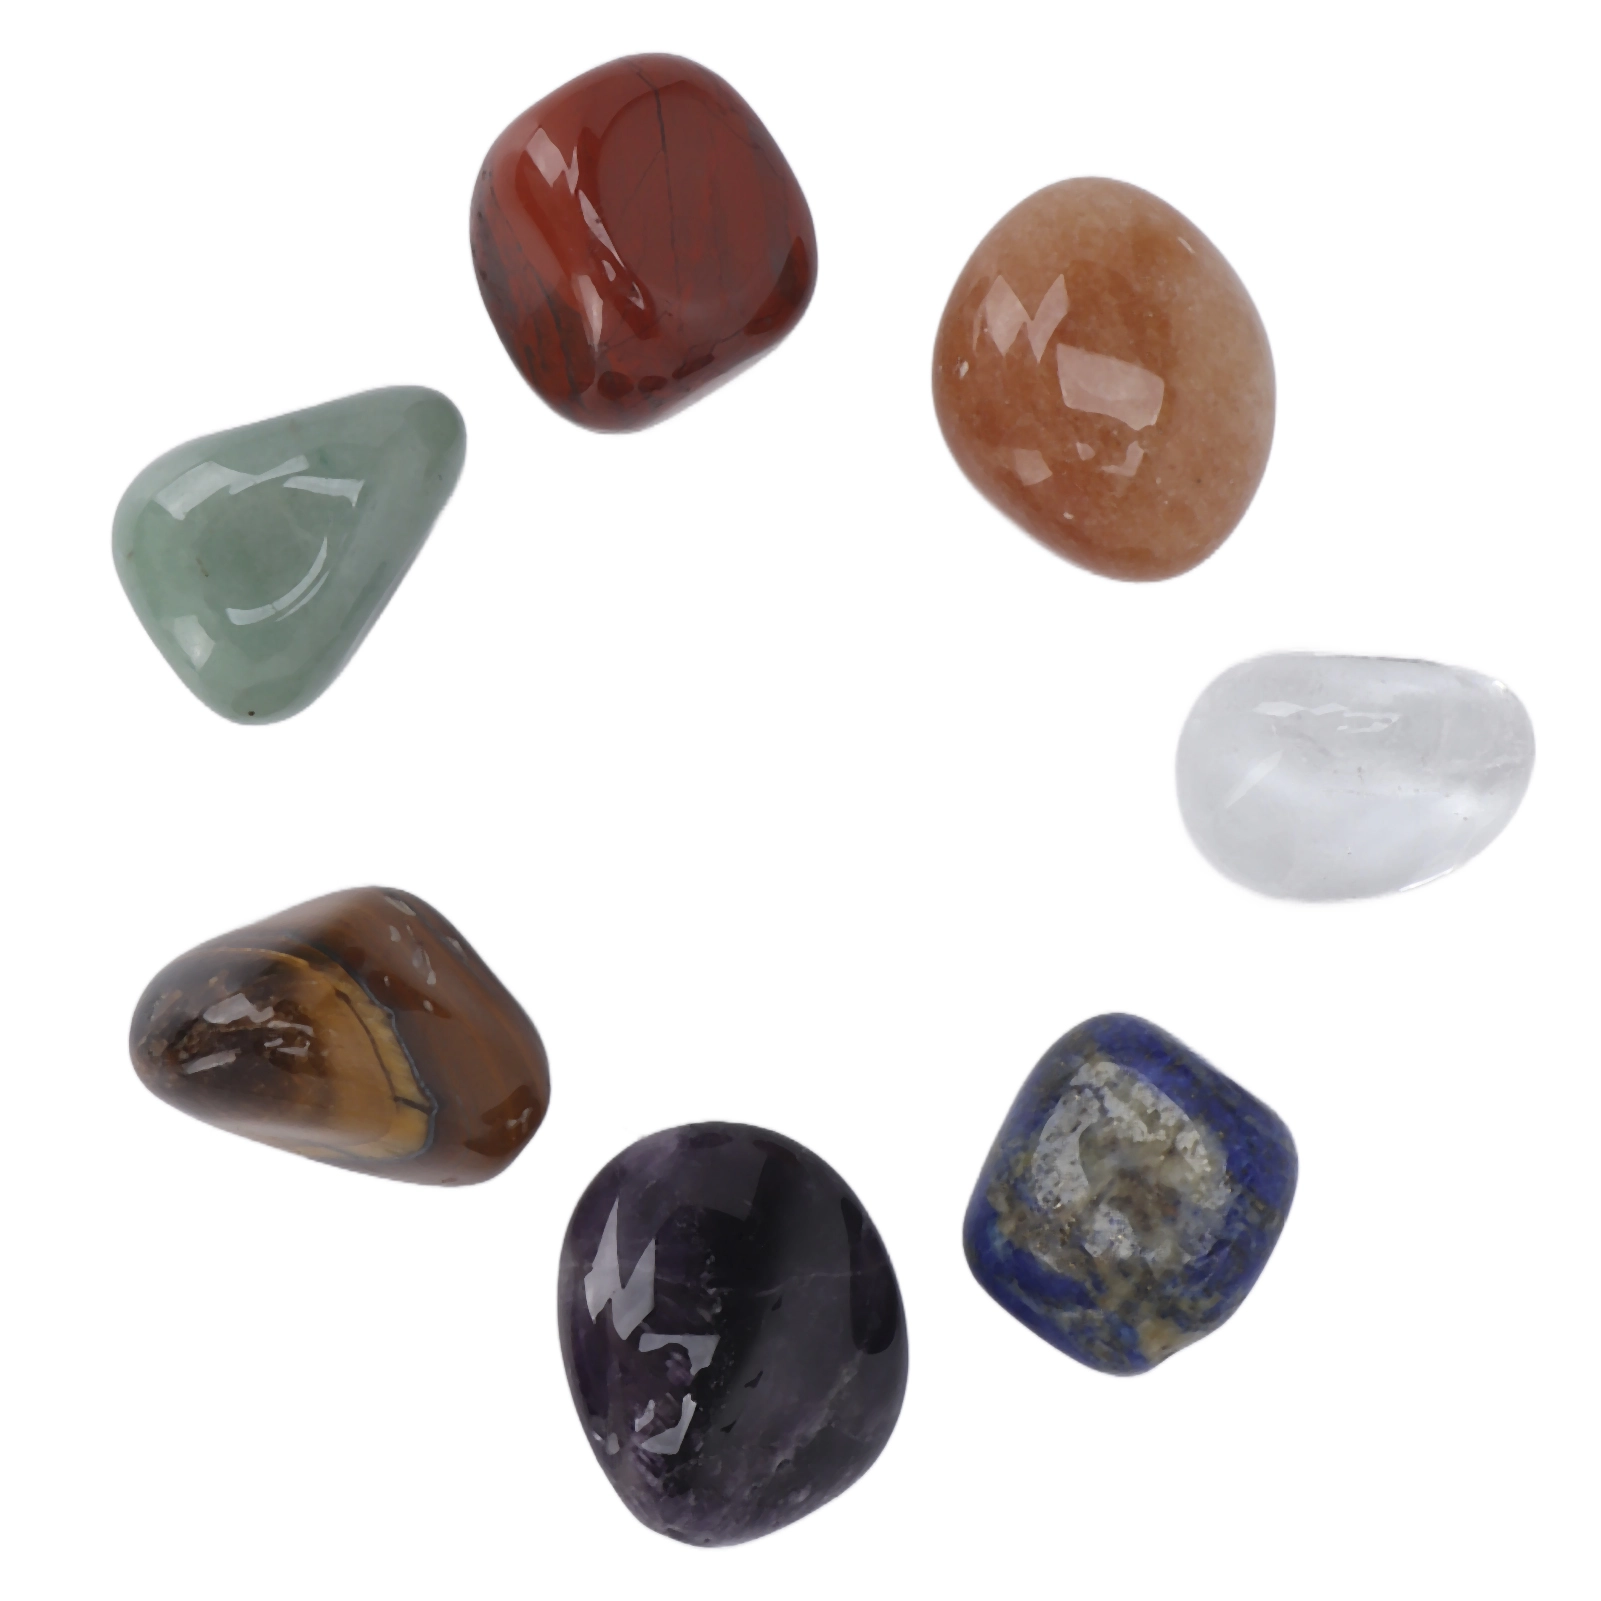 Как выбрать натуральный камень для отделки - #Производство изделий извысококачественных натуральных природных камней — гранита и мрамора.